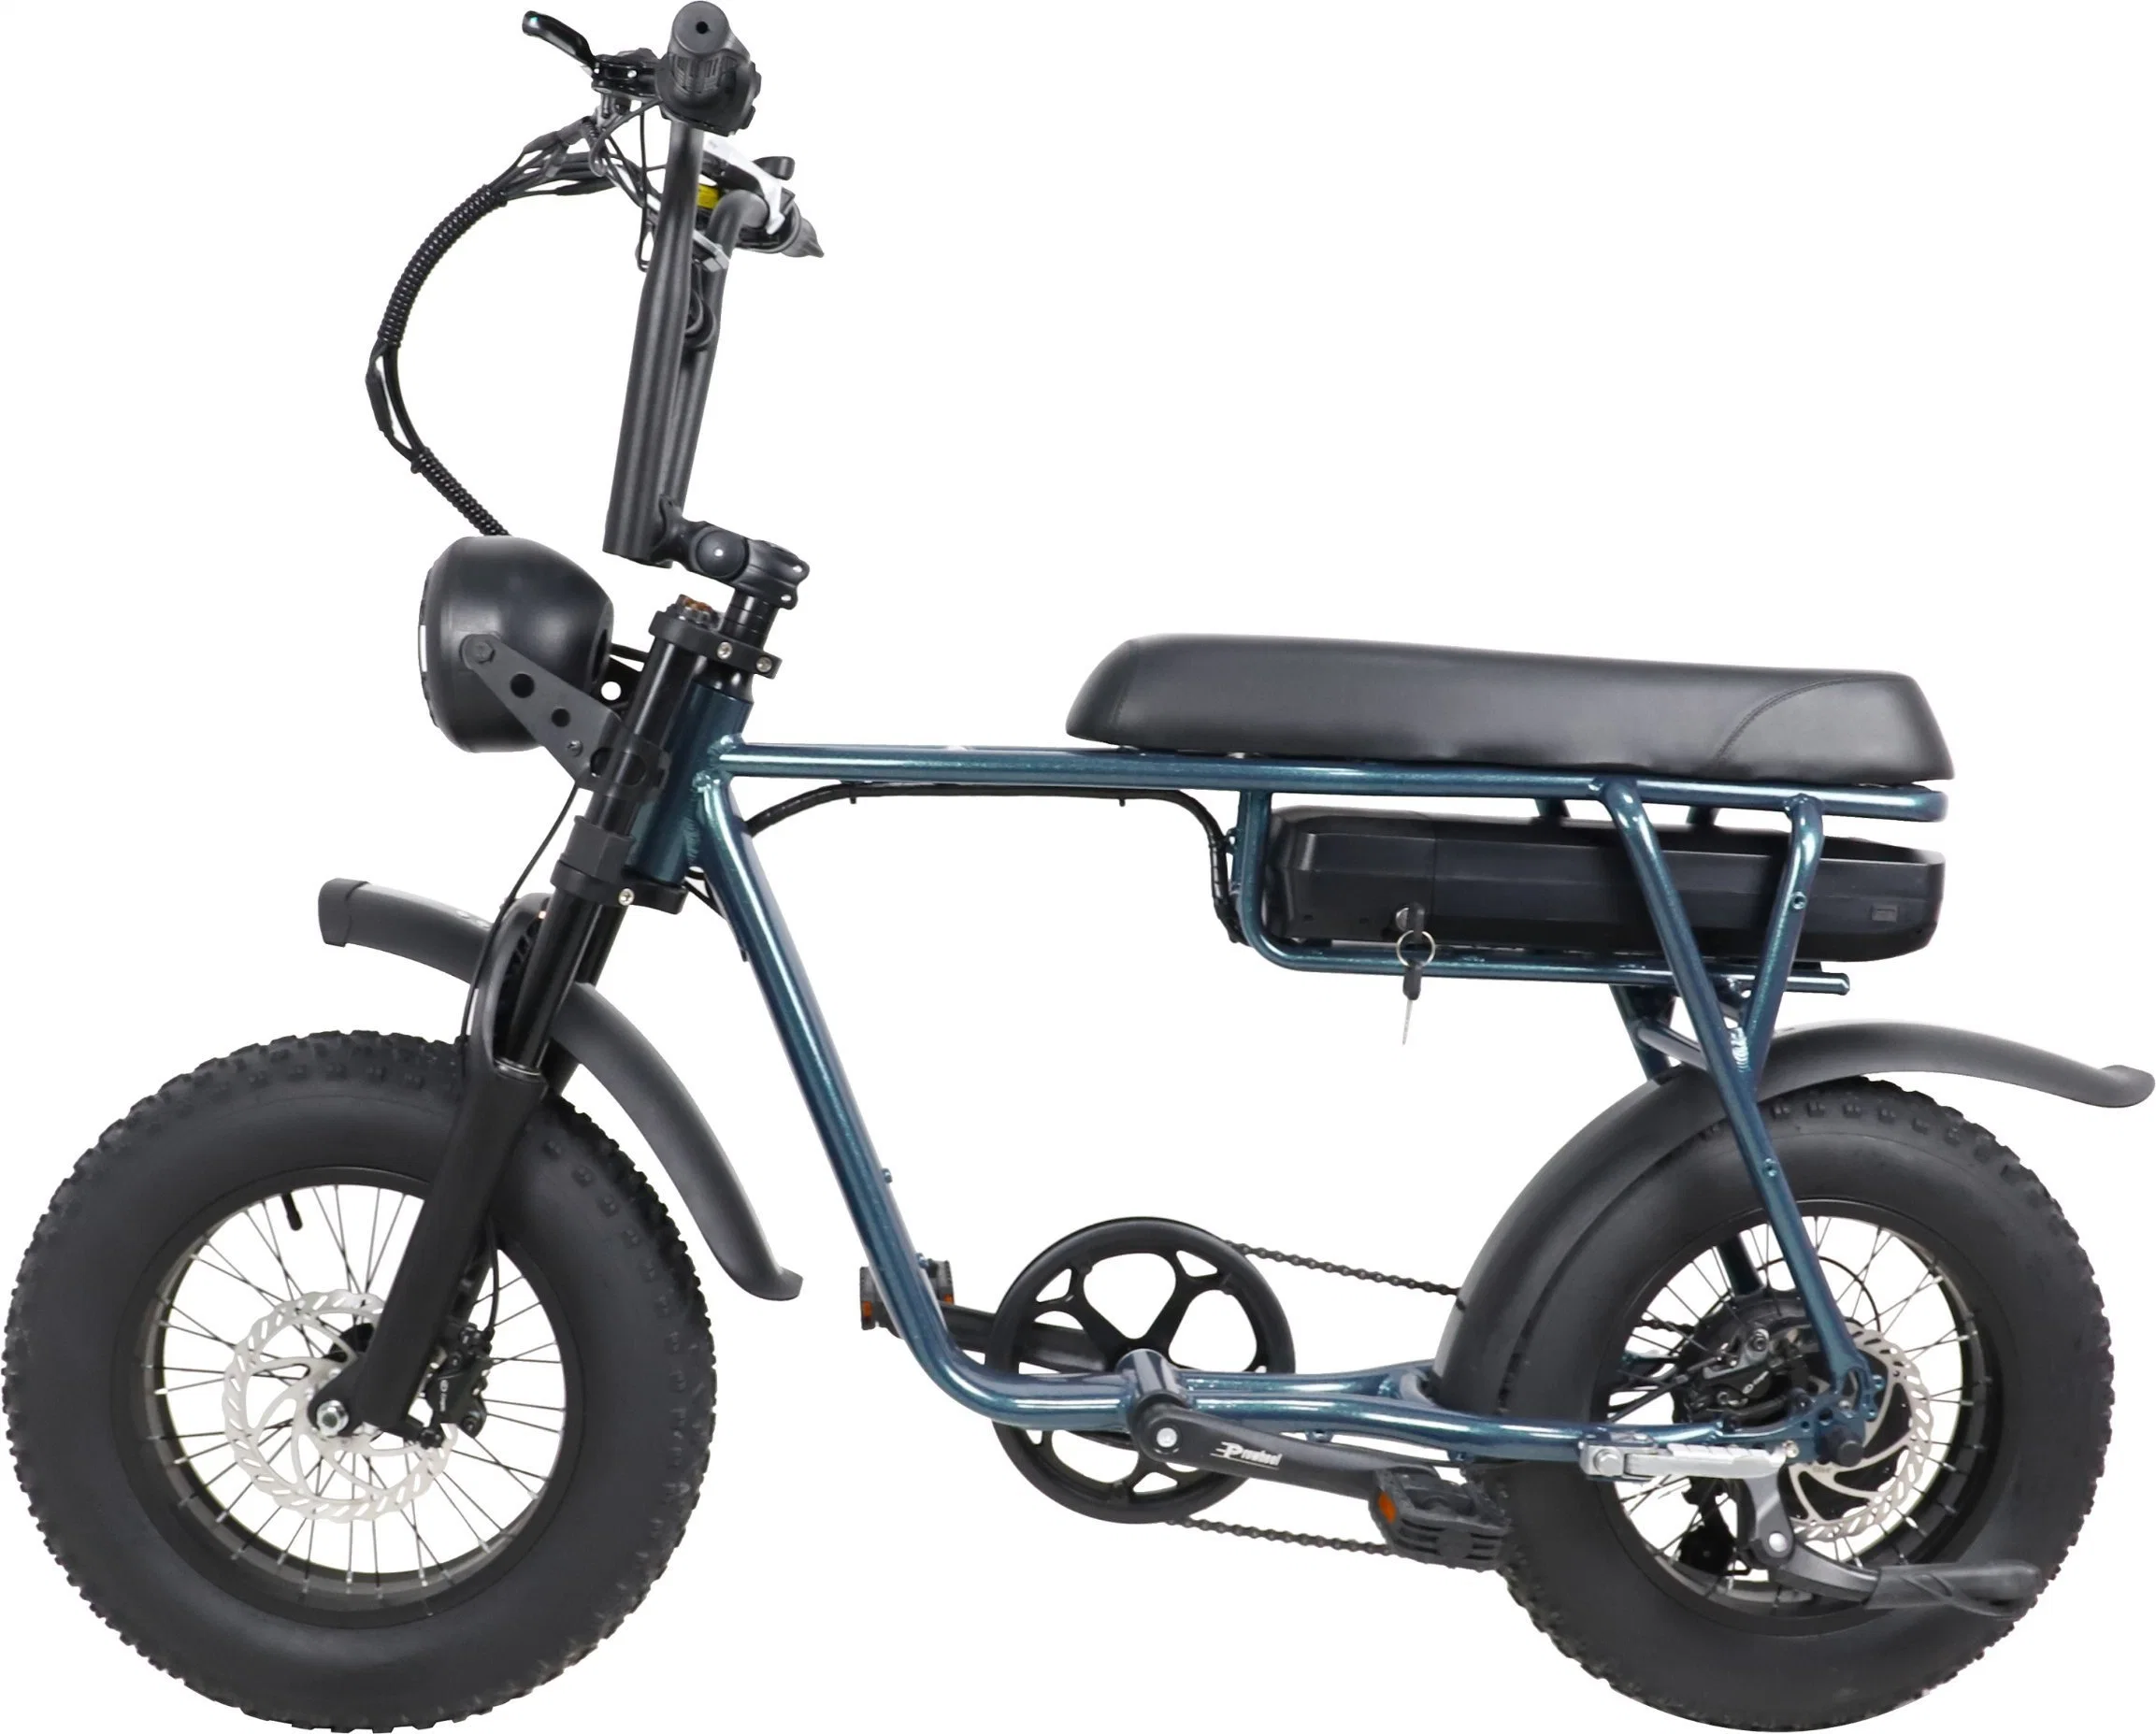 ATV Elektro Fahrrad 750W 1000W Motor 48V 20inch Fat Reifen E-Bike mit langer Reichweite – Offroad-MID-Drive-Anzeige Motorrad Hydraulische Bremse Elektrisches Fahrrad